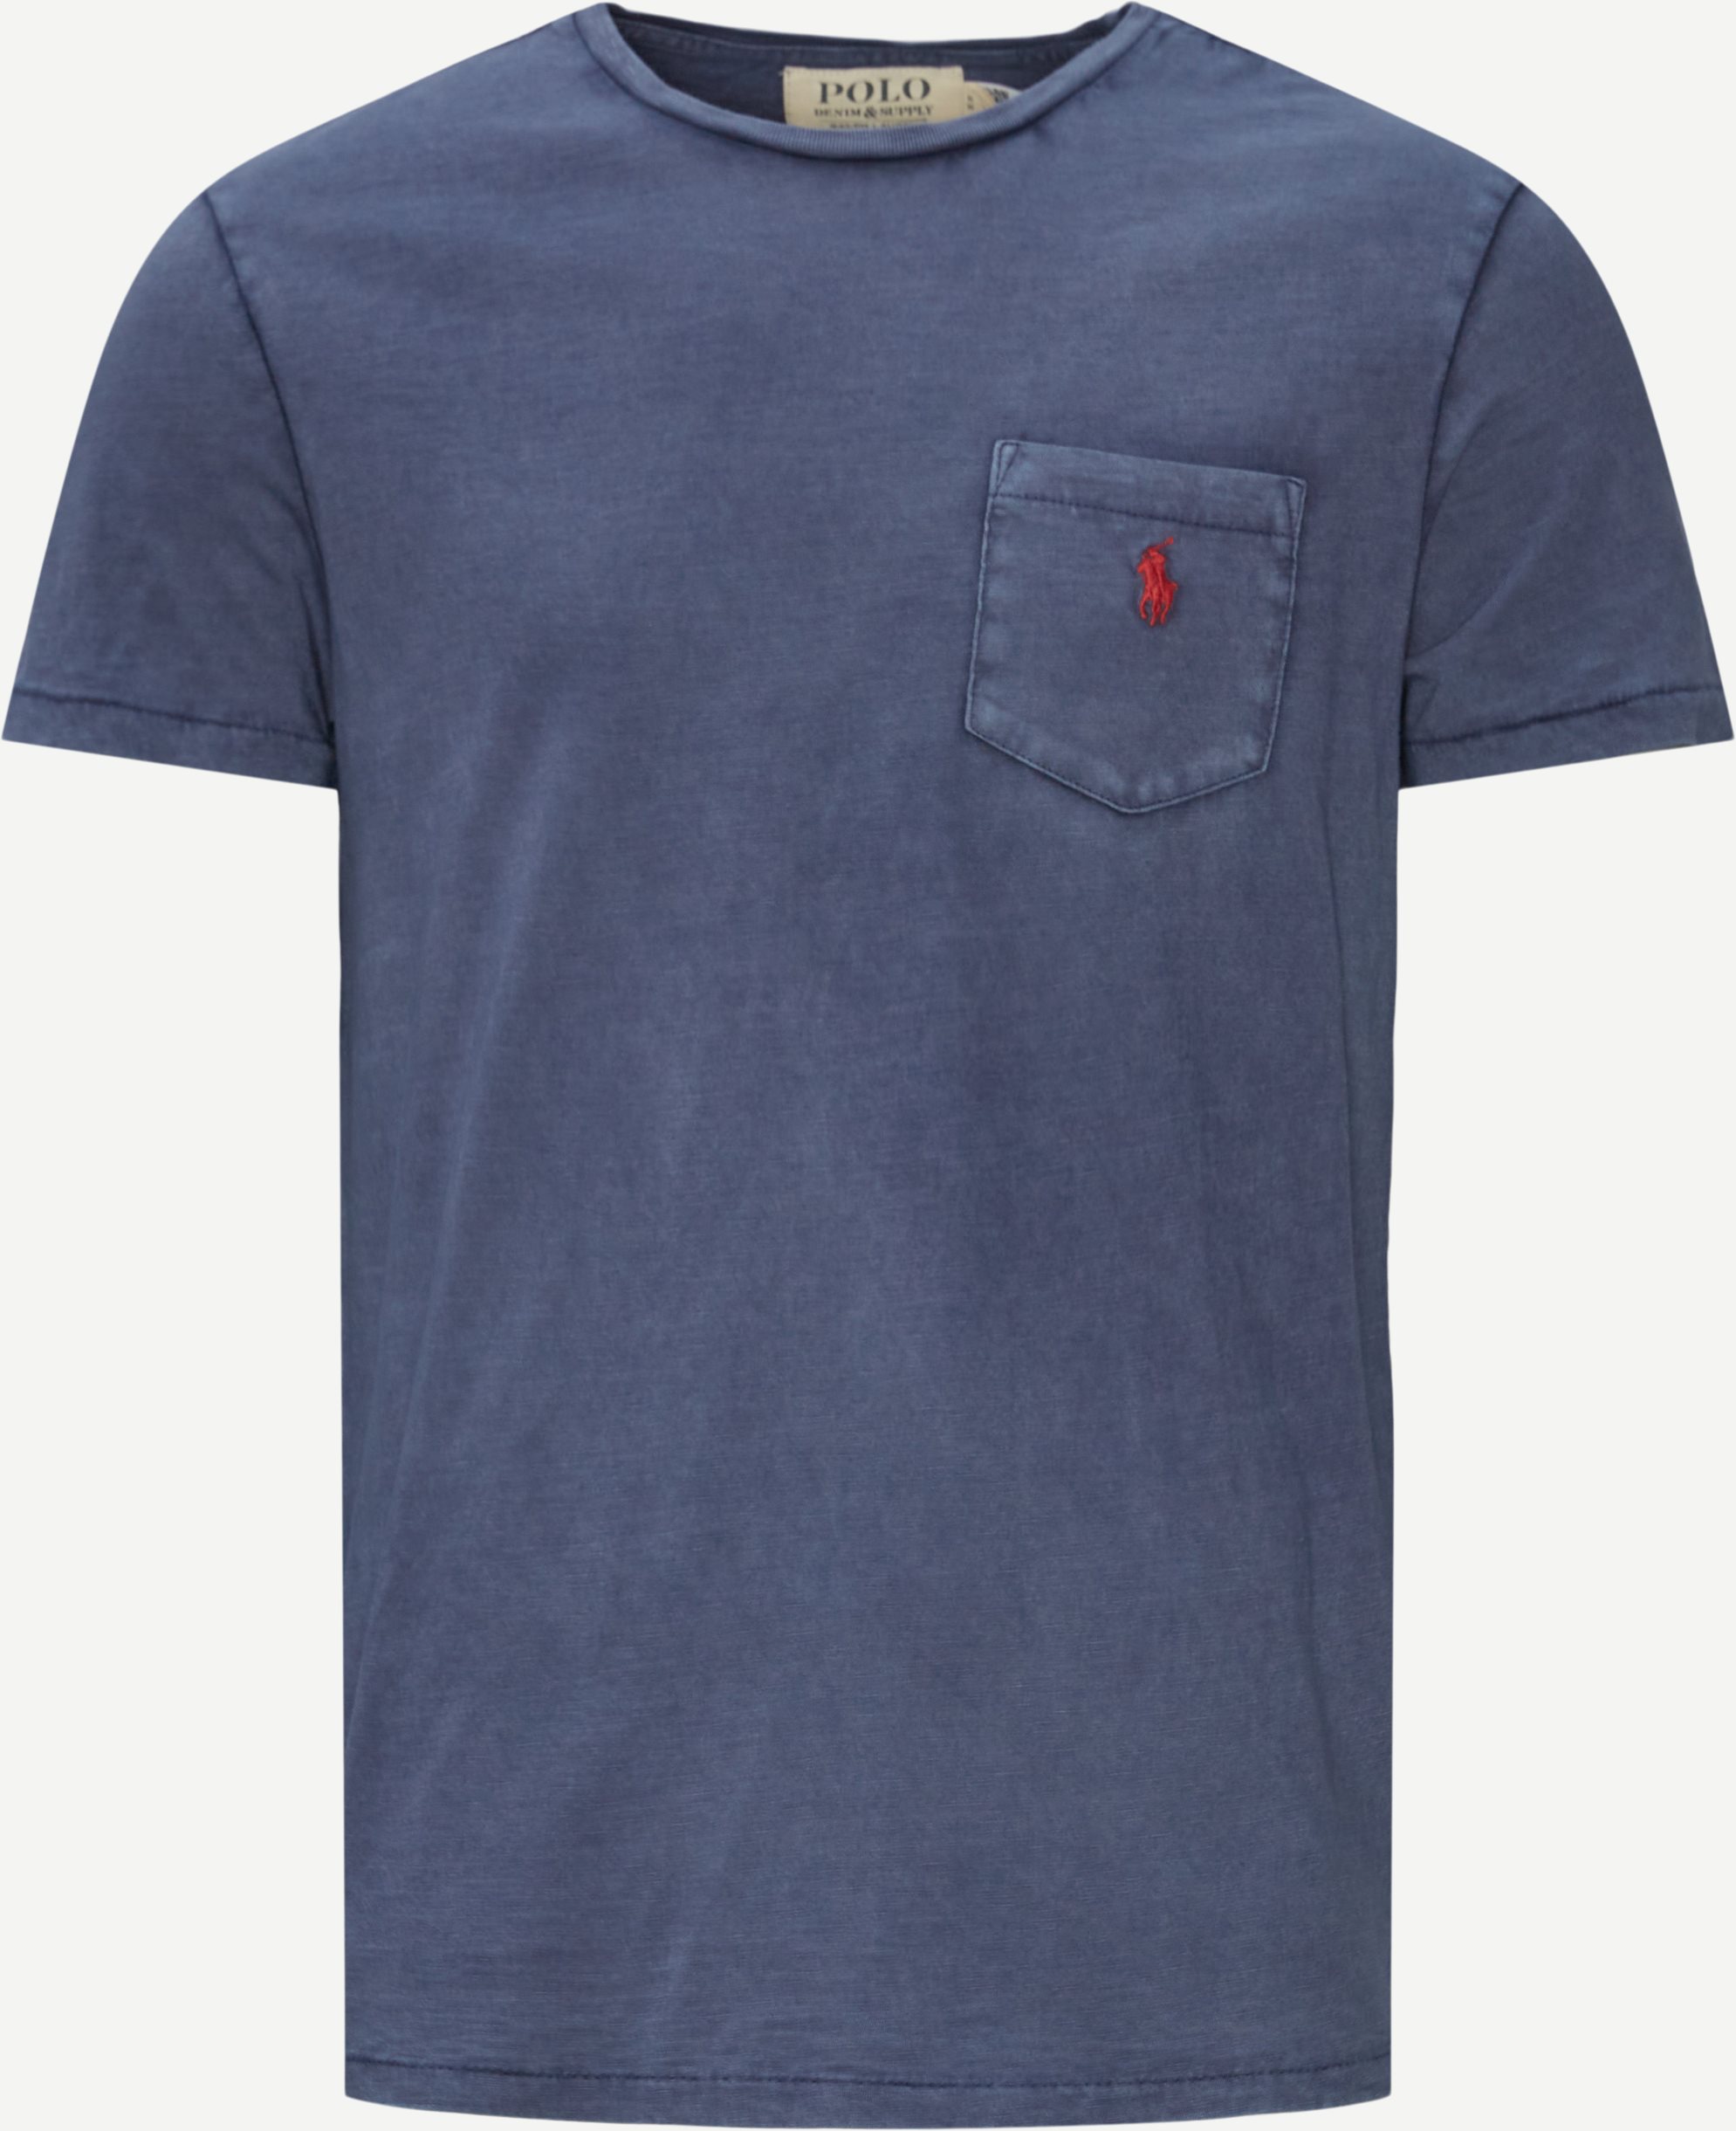 Polo Ralph Lauren T-shirts 710795137 Blå